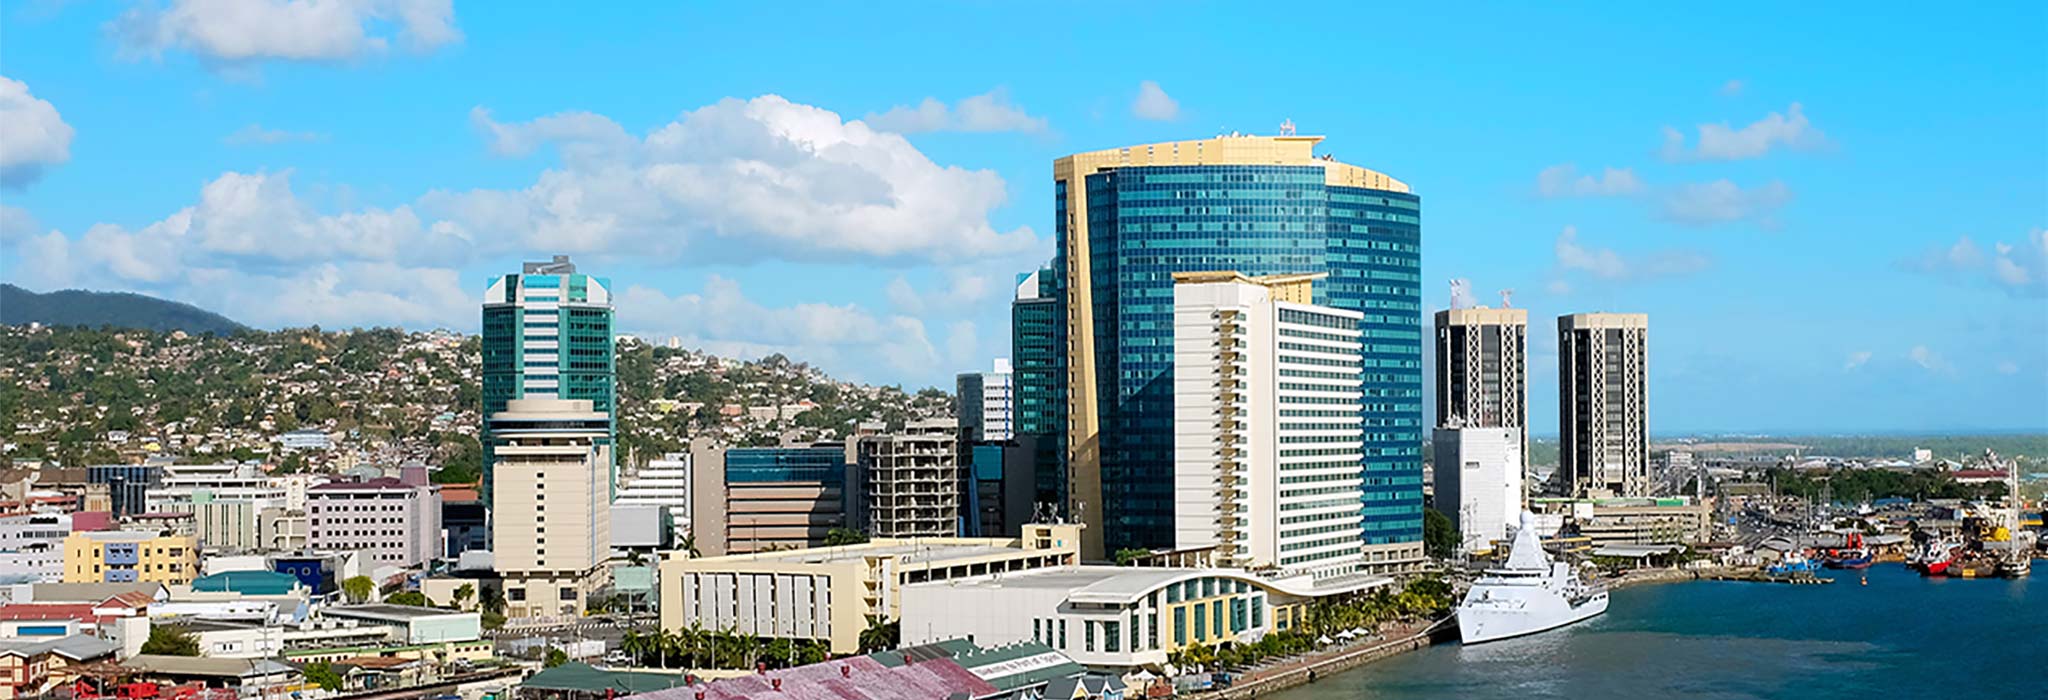 Trinidad City View